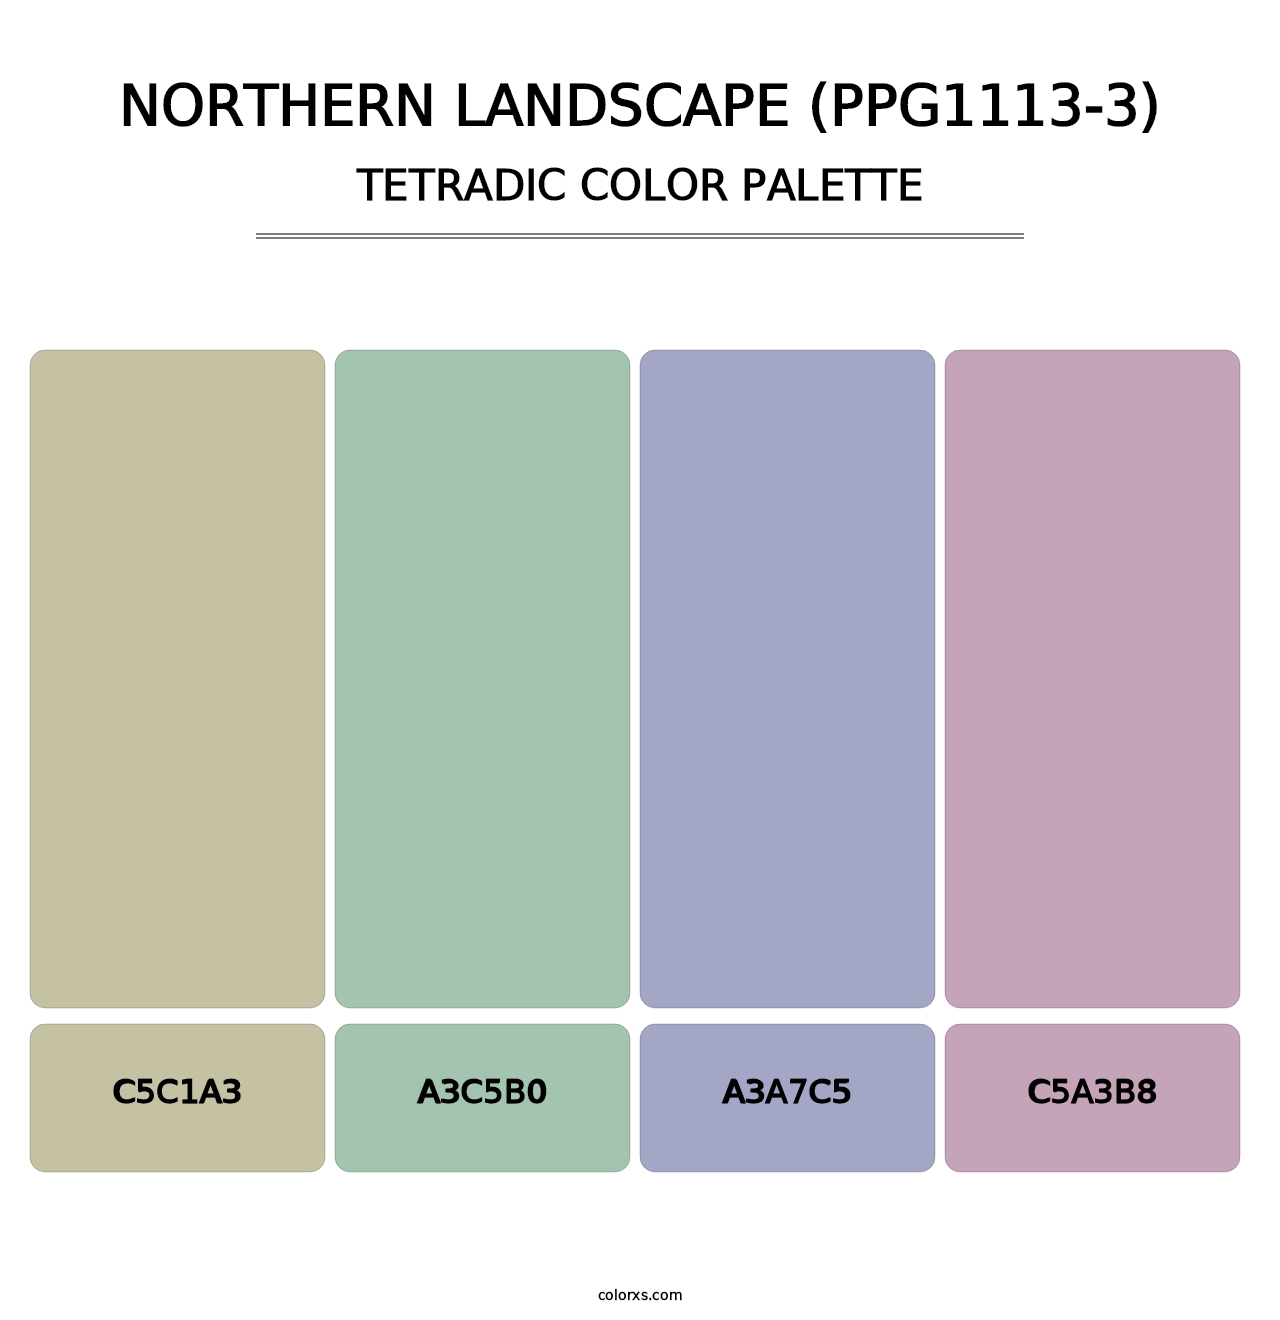 Northern Landscape (PPG1113-3) - Tetradic Color Palette